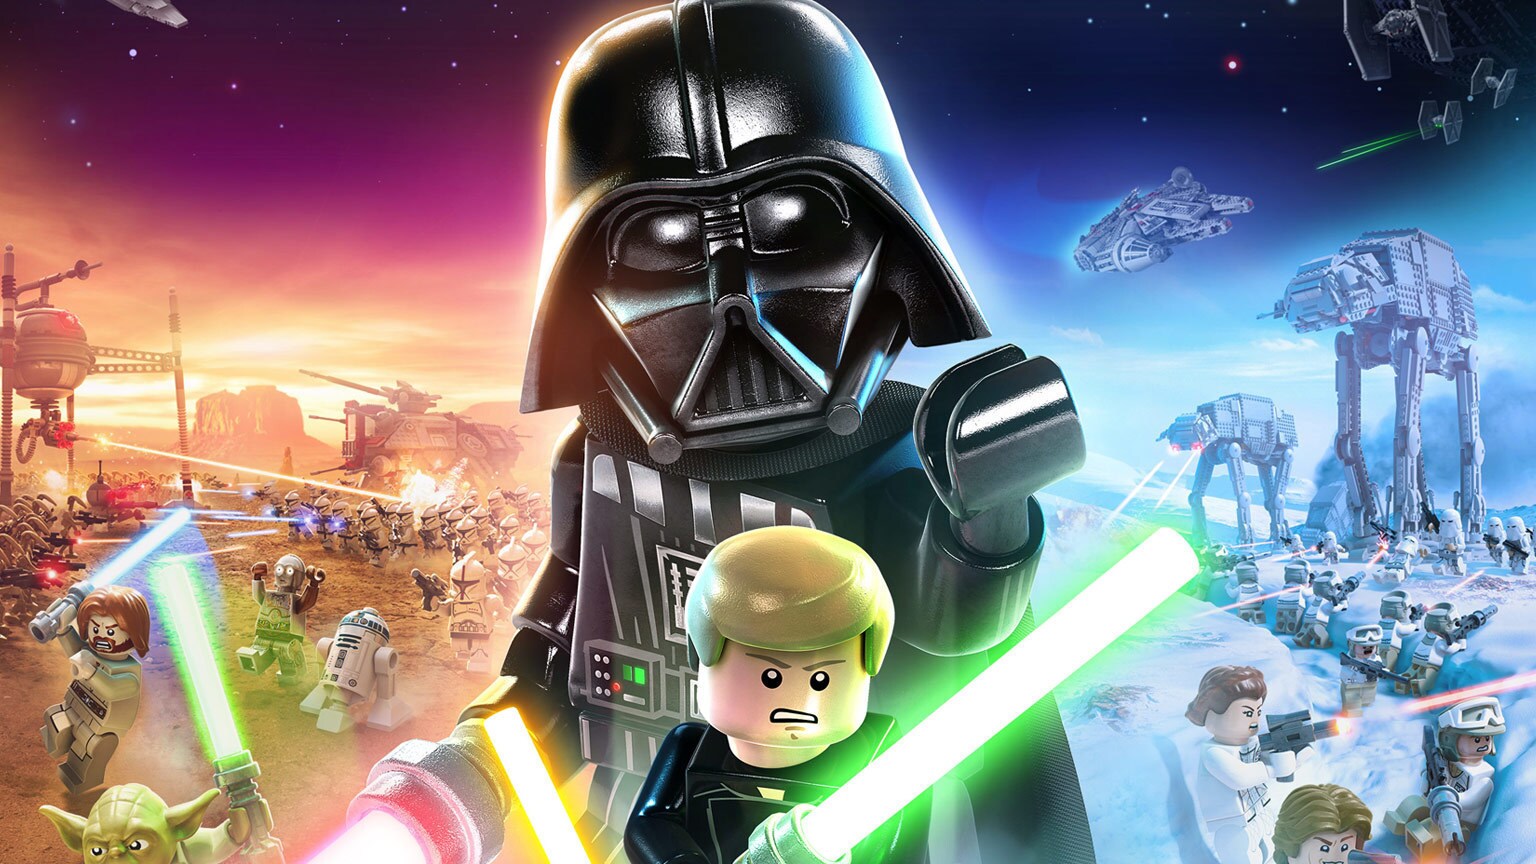 faglært entusiastisk kan opfattes “We Were Always Going to Go Big!”: Inside LEGO Star Wars: The Skywalker Saga  | StarWars.com